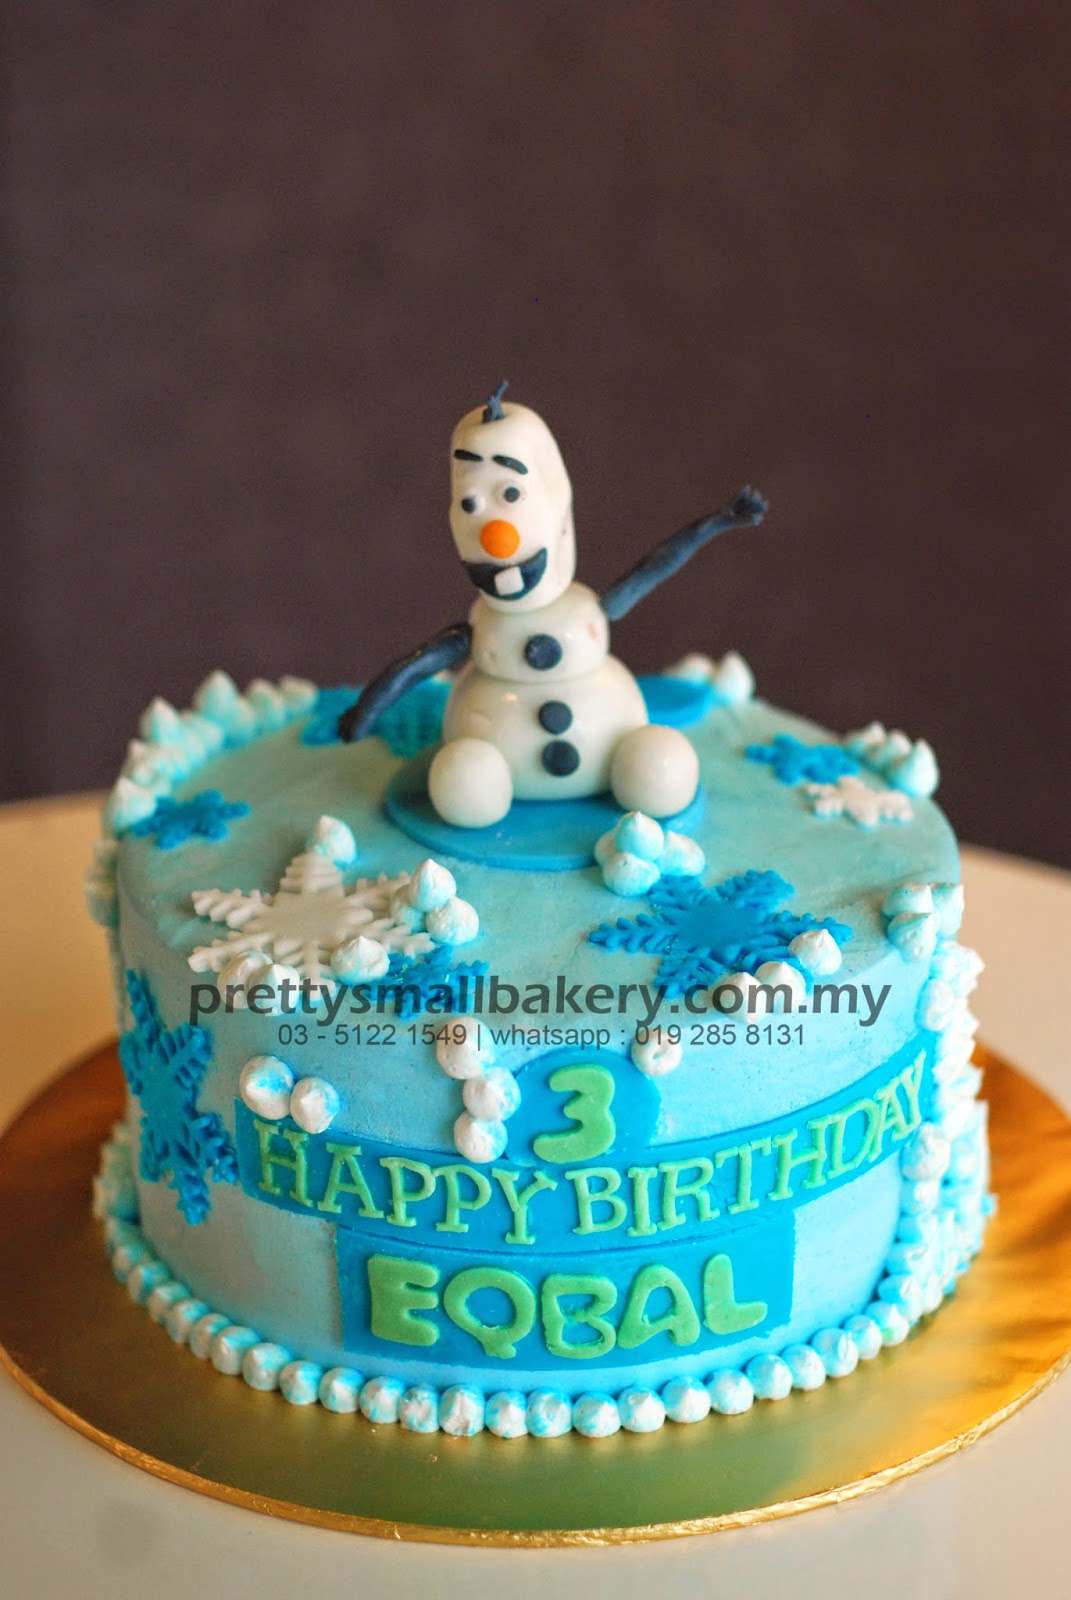 Kek birthday OLAF - Prettysmallbakery